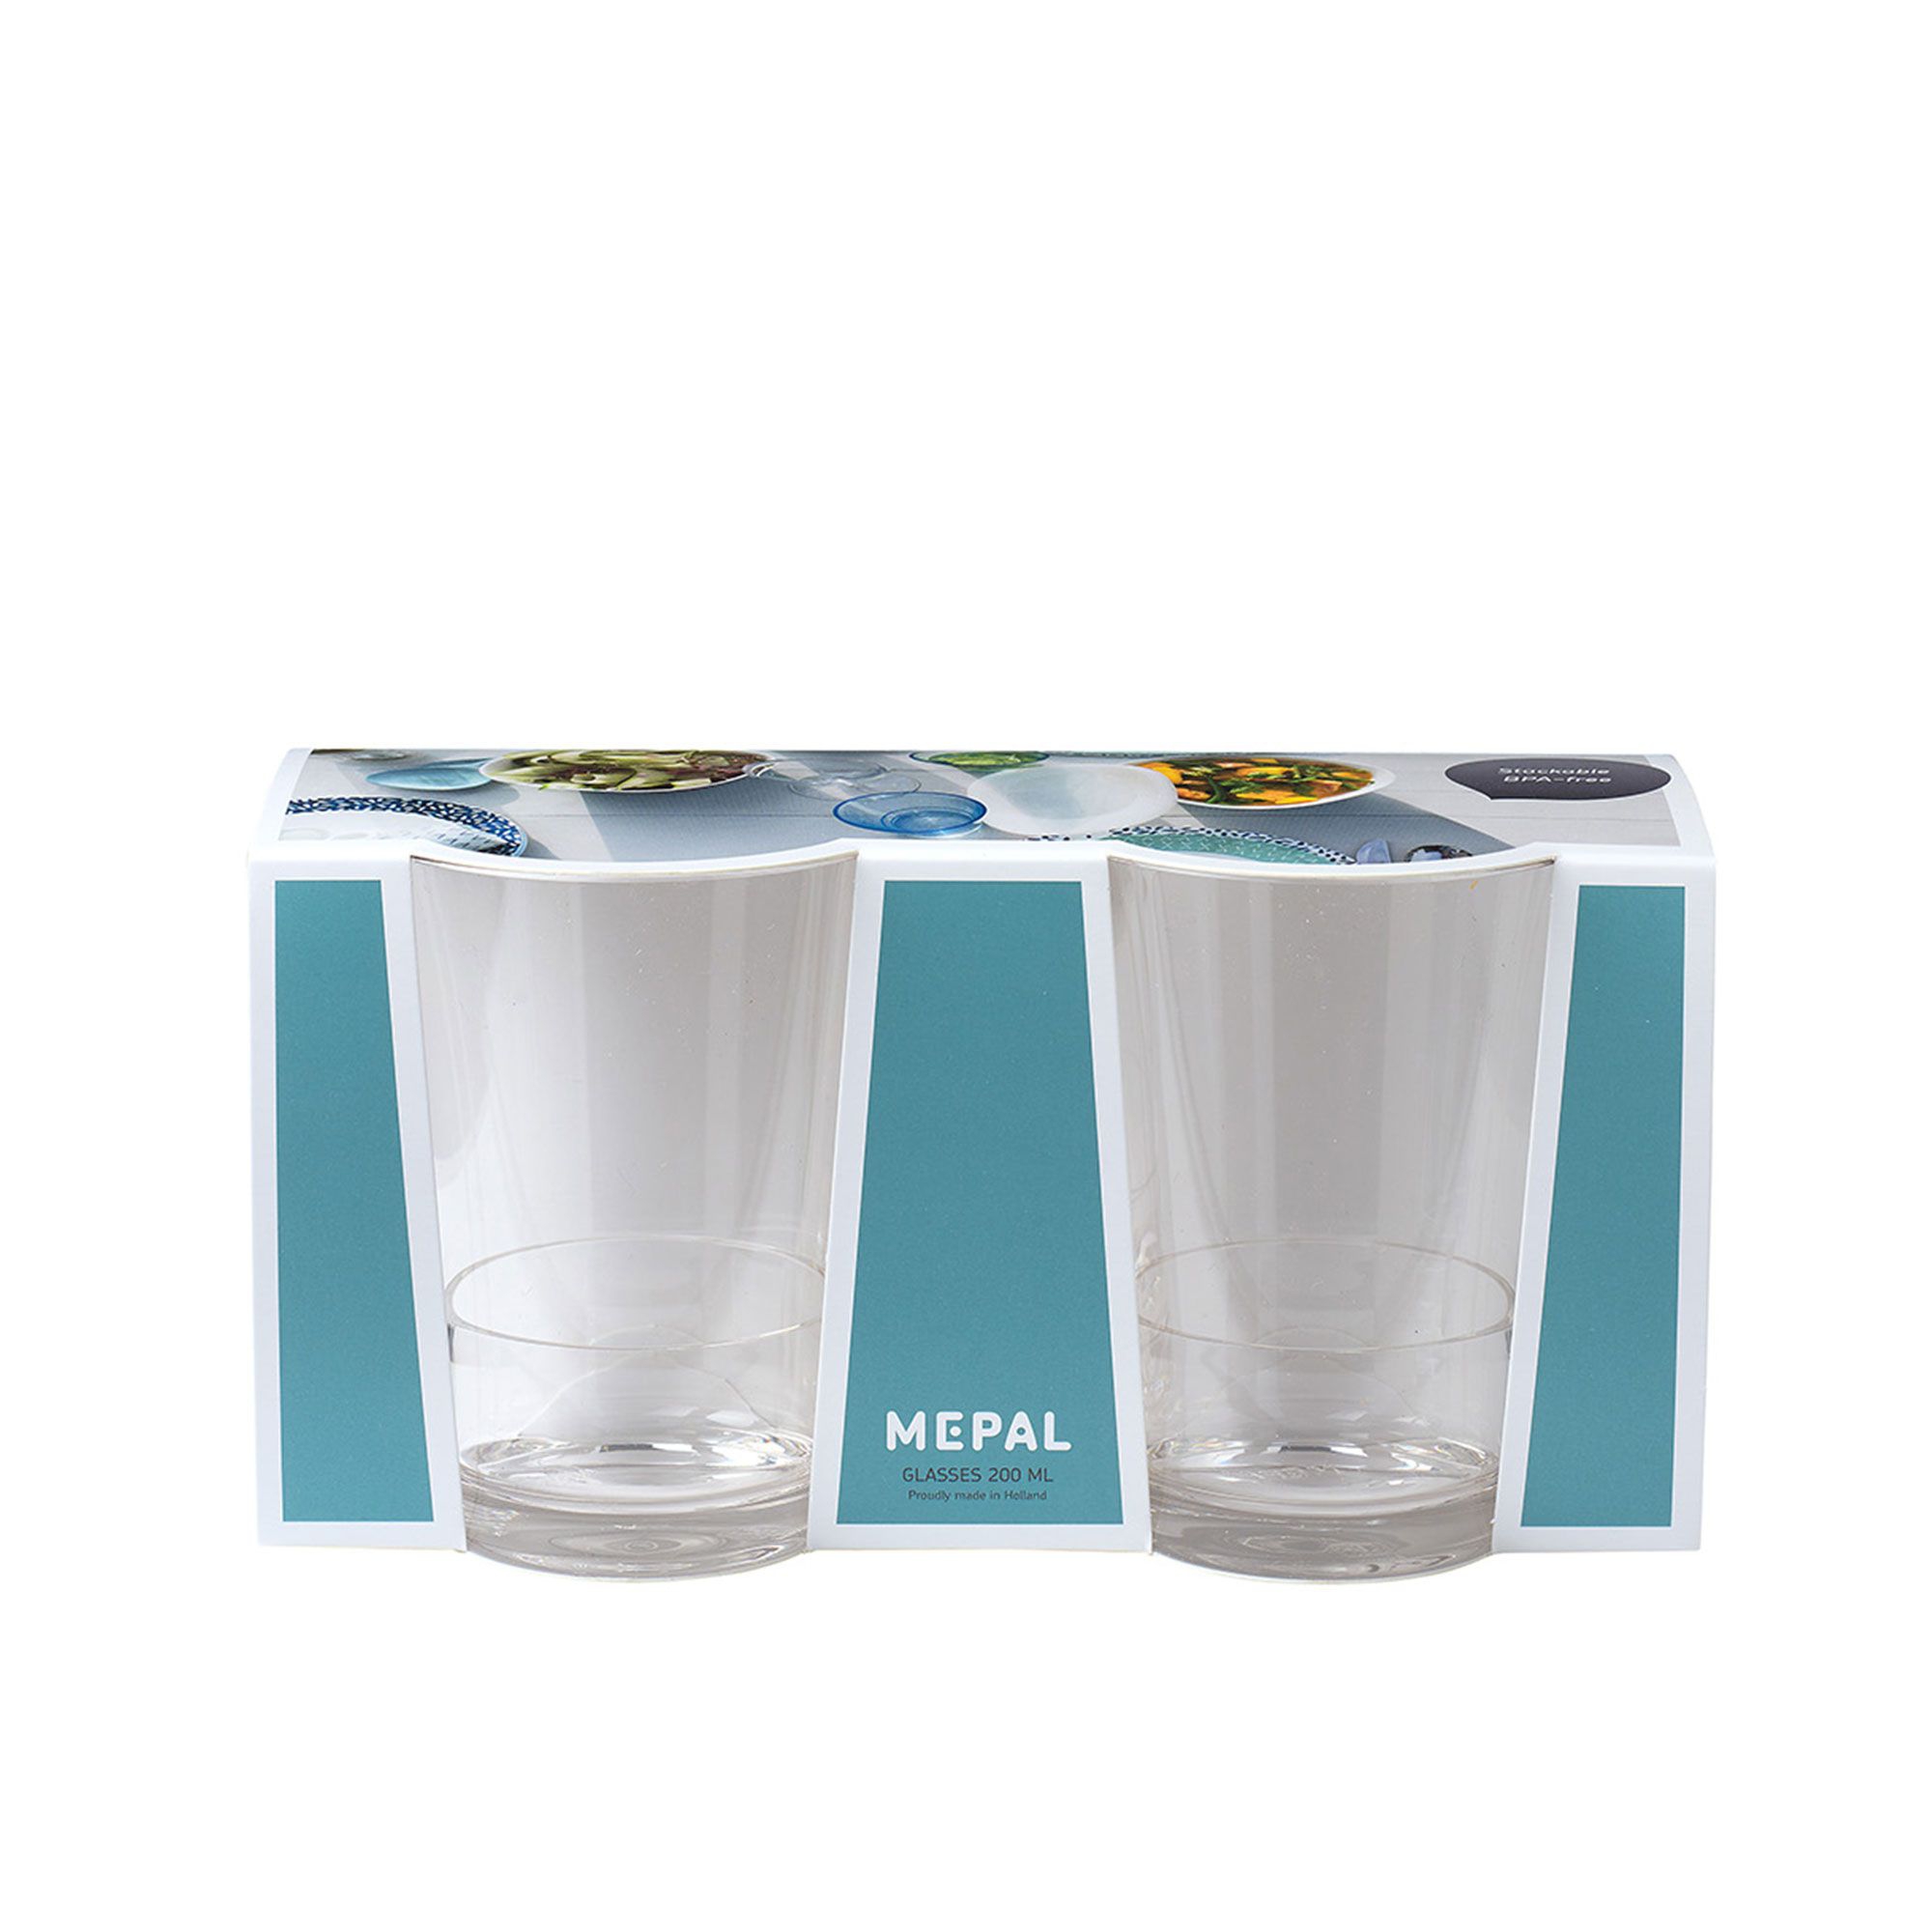 Mepal - plastic glass 200ml set of 2